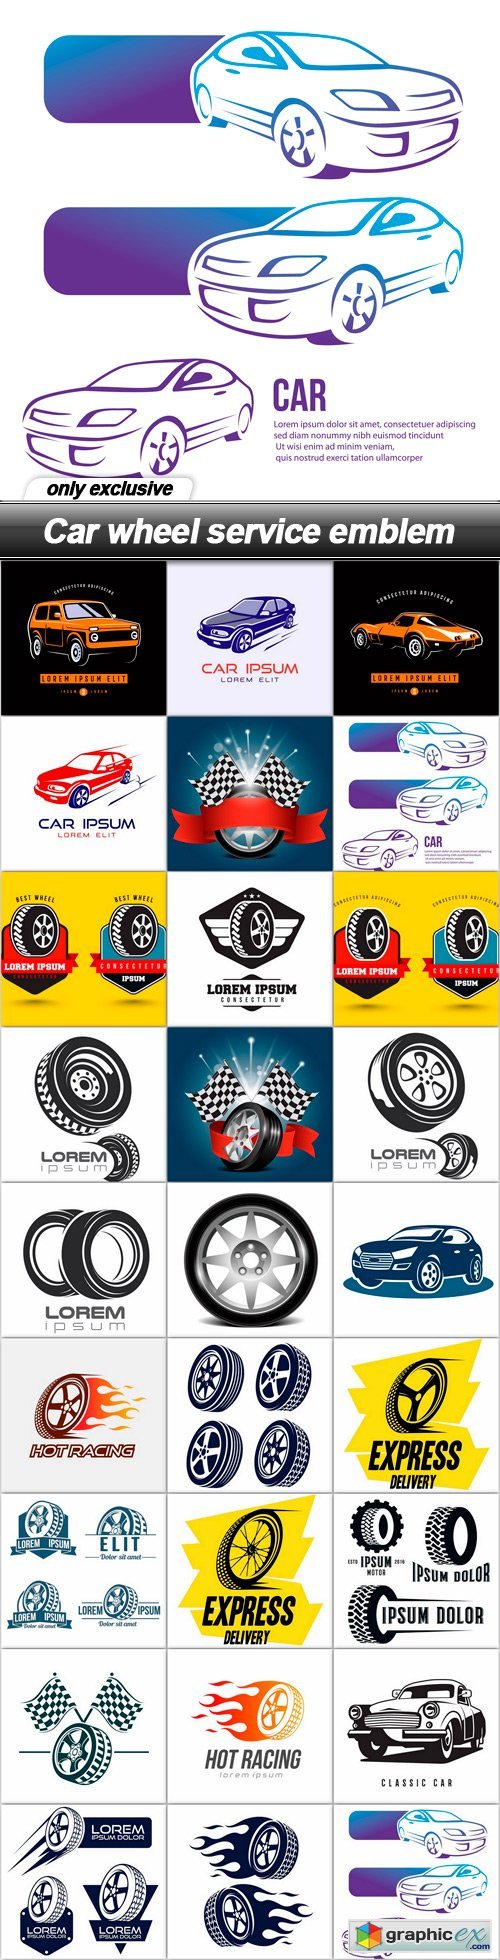 Car wheel service emblem - 26 EPS